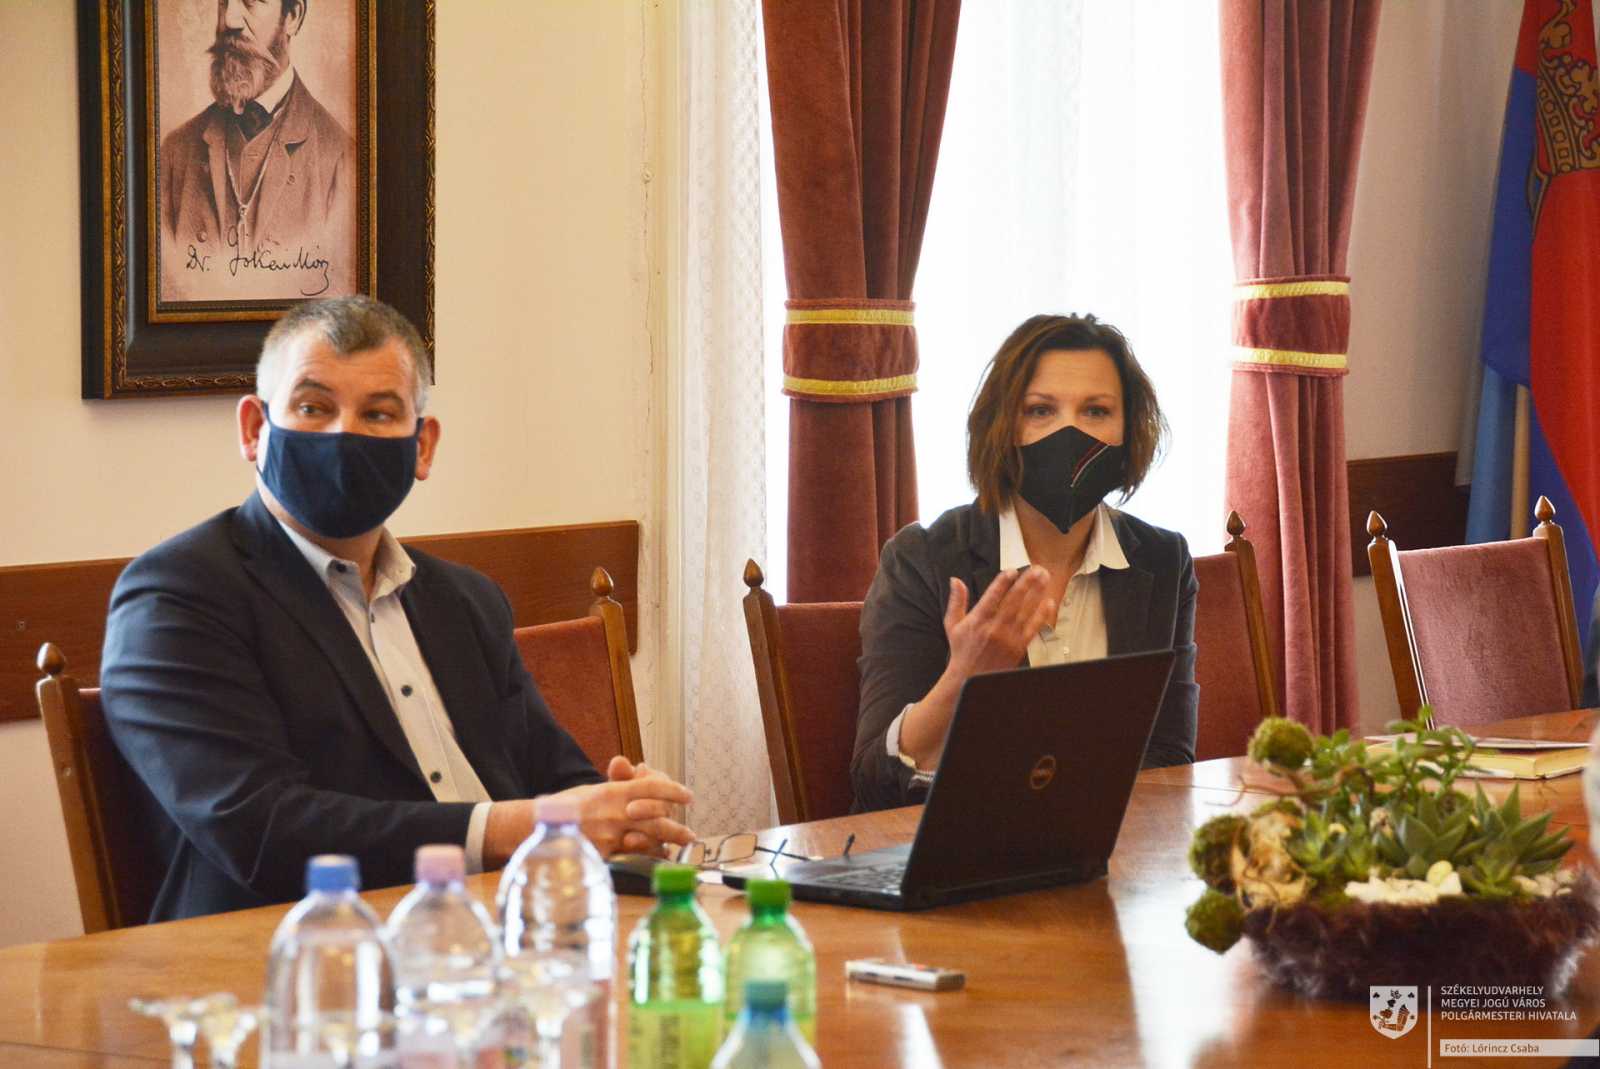 Gálfi Árpád polgármester és Pálfi Kinga a költésgvetés-tervezet bemutatásán | Fotók: polgármesteri hivatal